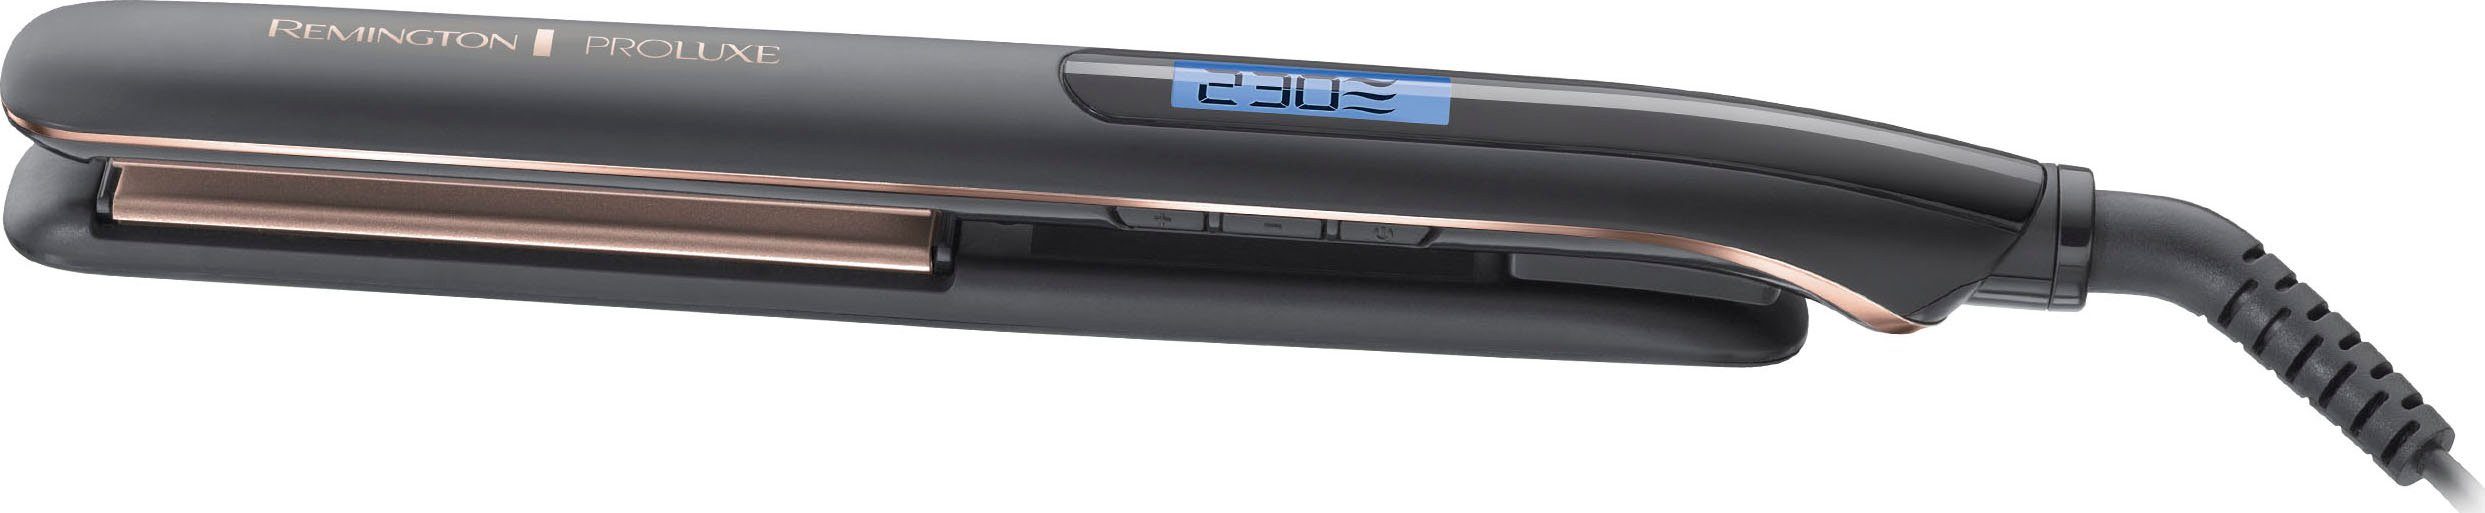 Remington Glätteisen S9100B E51 PROluxe Midnight Ultimate-Glide-Keramik- Beschichtung, OPTIheat-Technologie, 9 Temperatureinstellungen von 150-230  °C, 10 Sek. Aufheizzeit, Sicherheitsabschaltung, Aufbewahrungstasche | Glätteisen